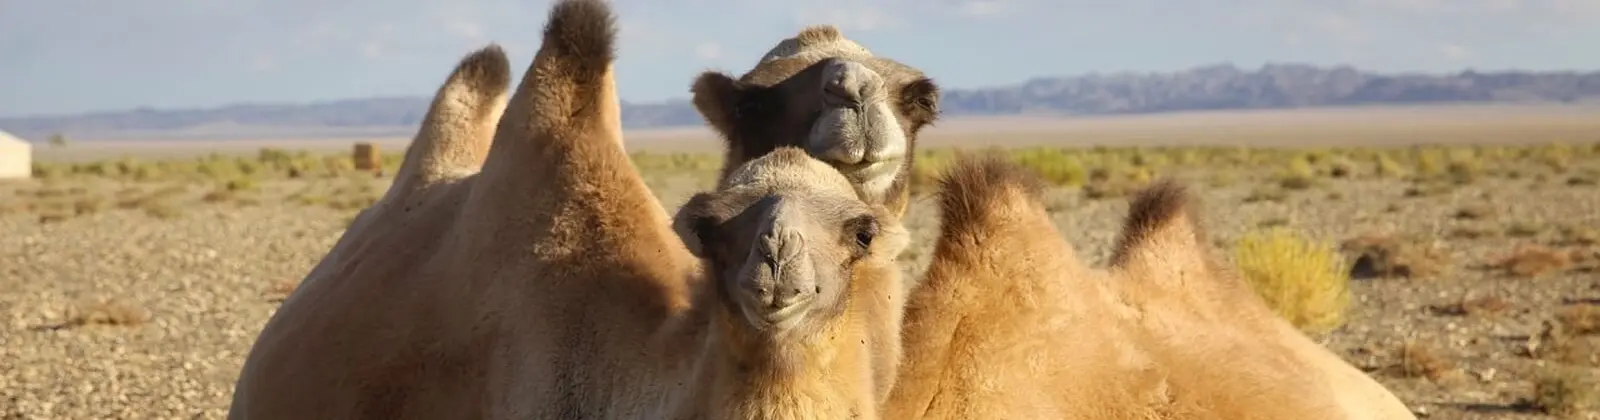 mudanzas en lomo de camellos en camellos - Por qué migraron los camellos